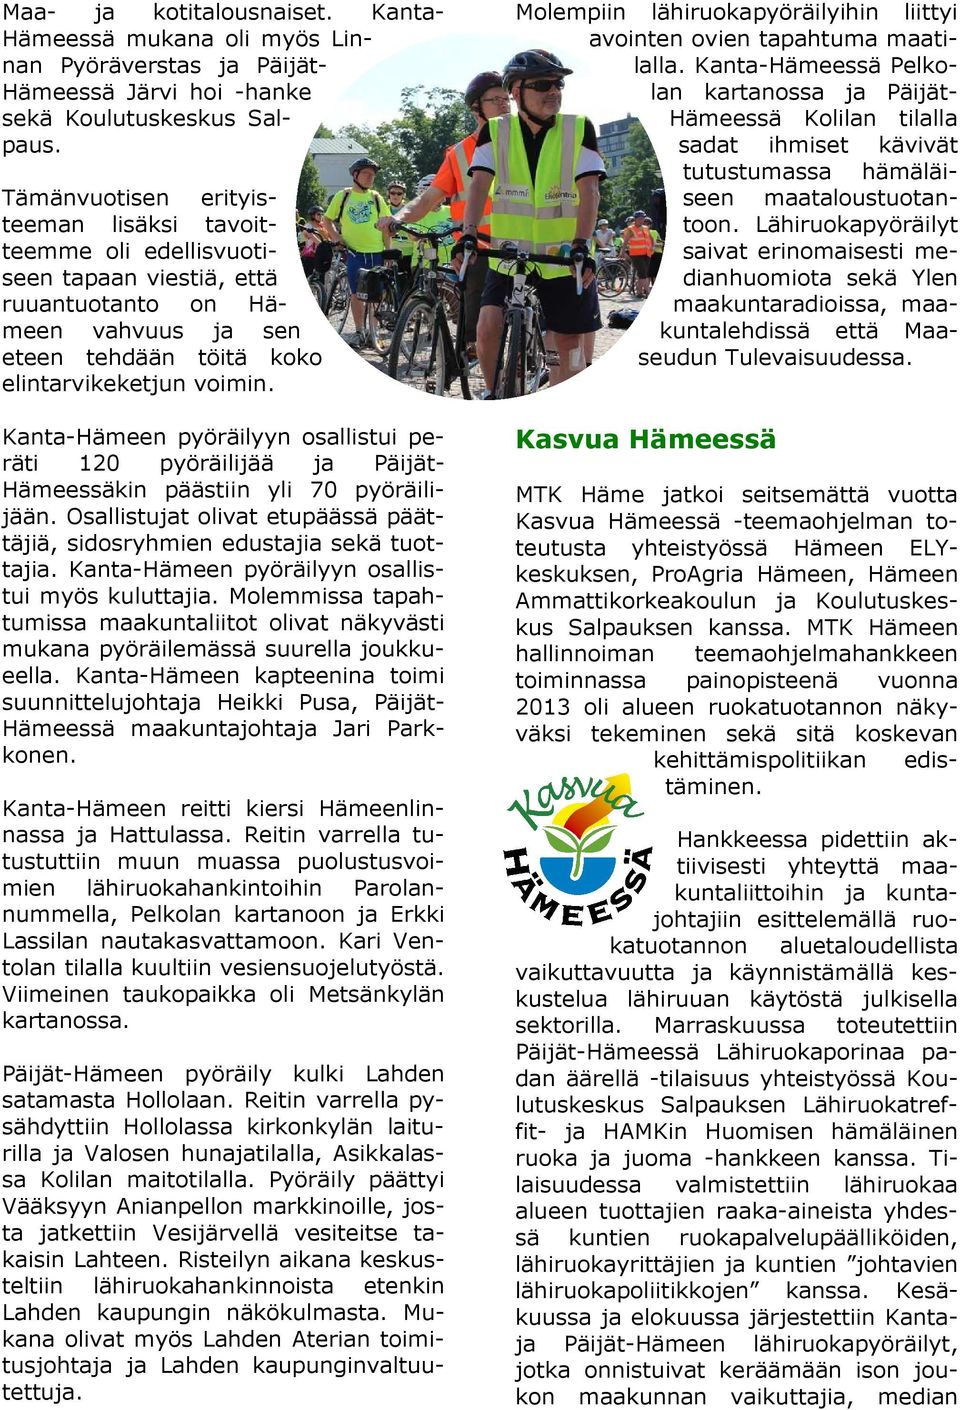 Kanta-Hämeen pyöräilyyn osallistui peräti 120 pyöräilijää ja Päijät- Hämeessäkin päästiin yli 70 pyöräilijään. Osallistujat olivat etupäässä päättäjiä, sidosryhmien edustajia sekä tuottajia.